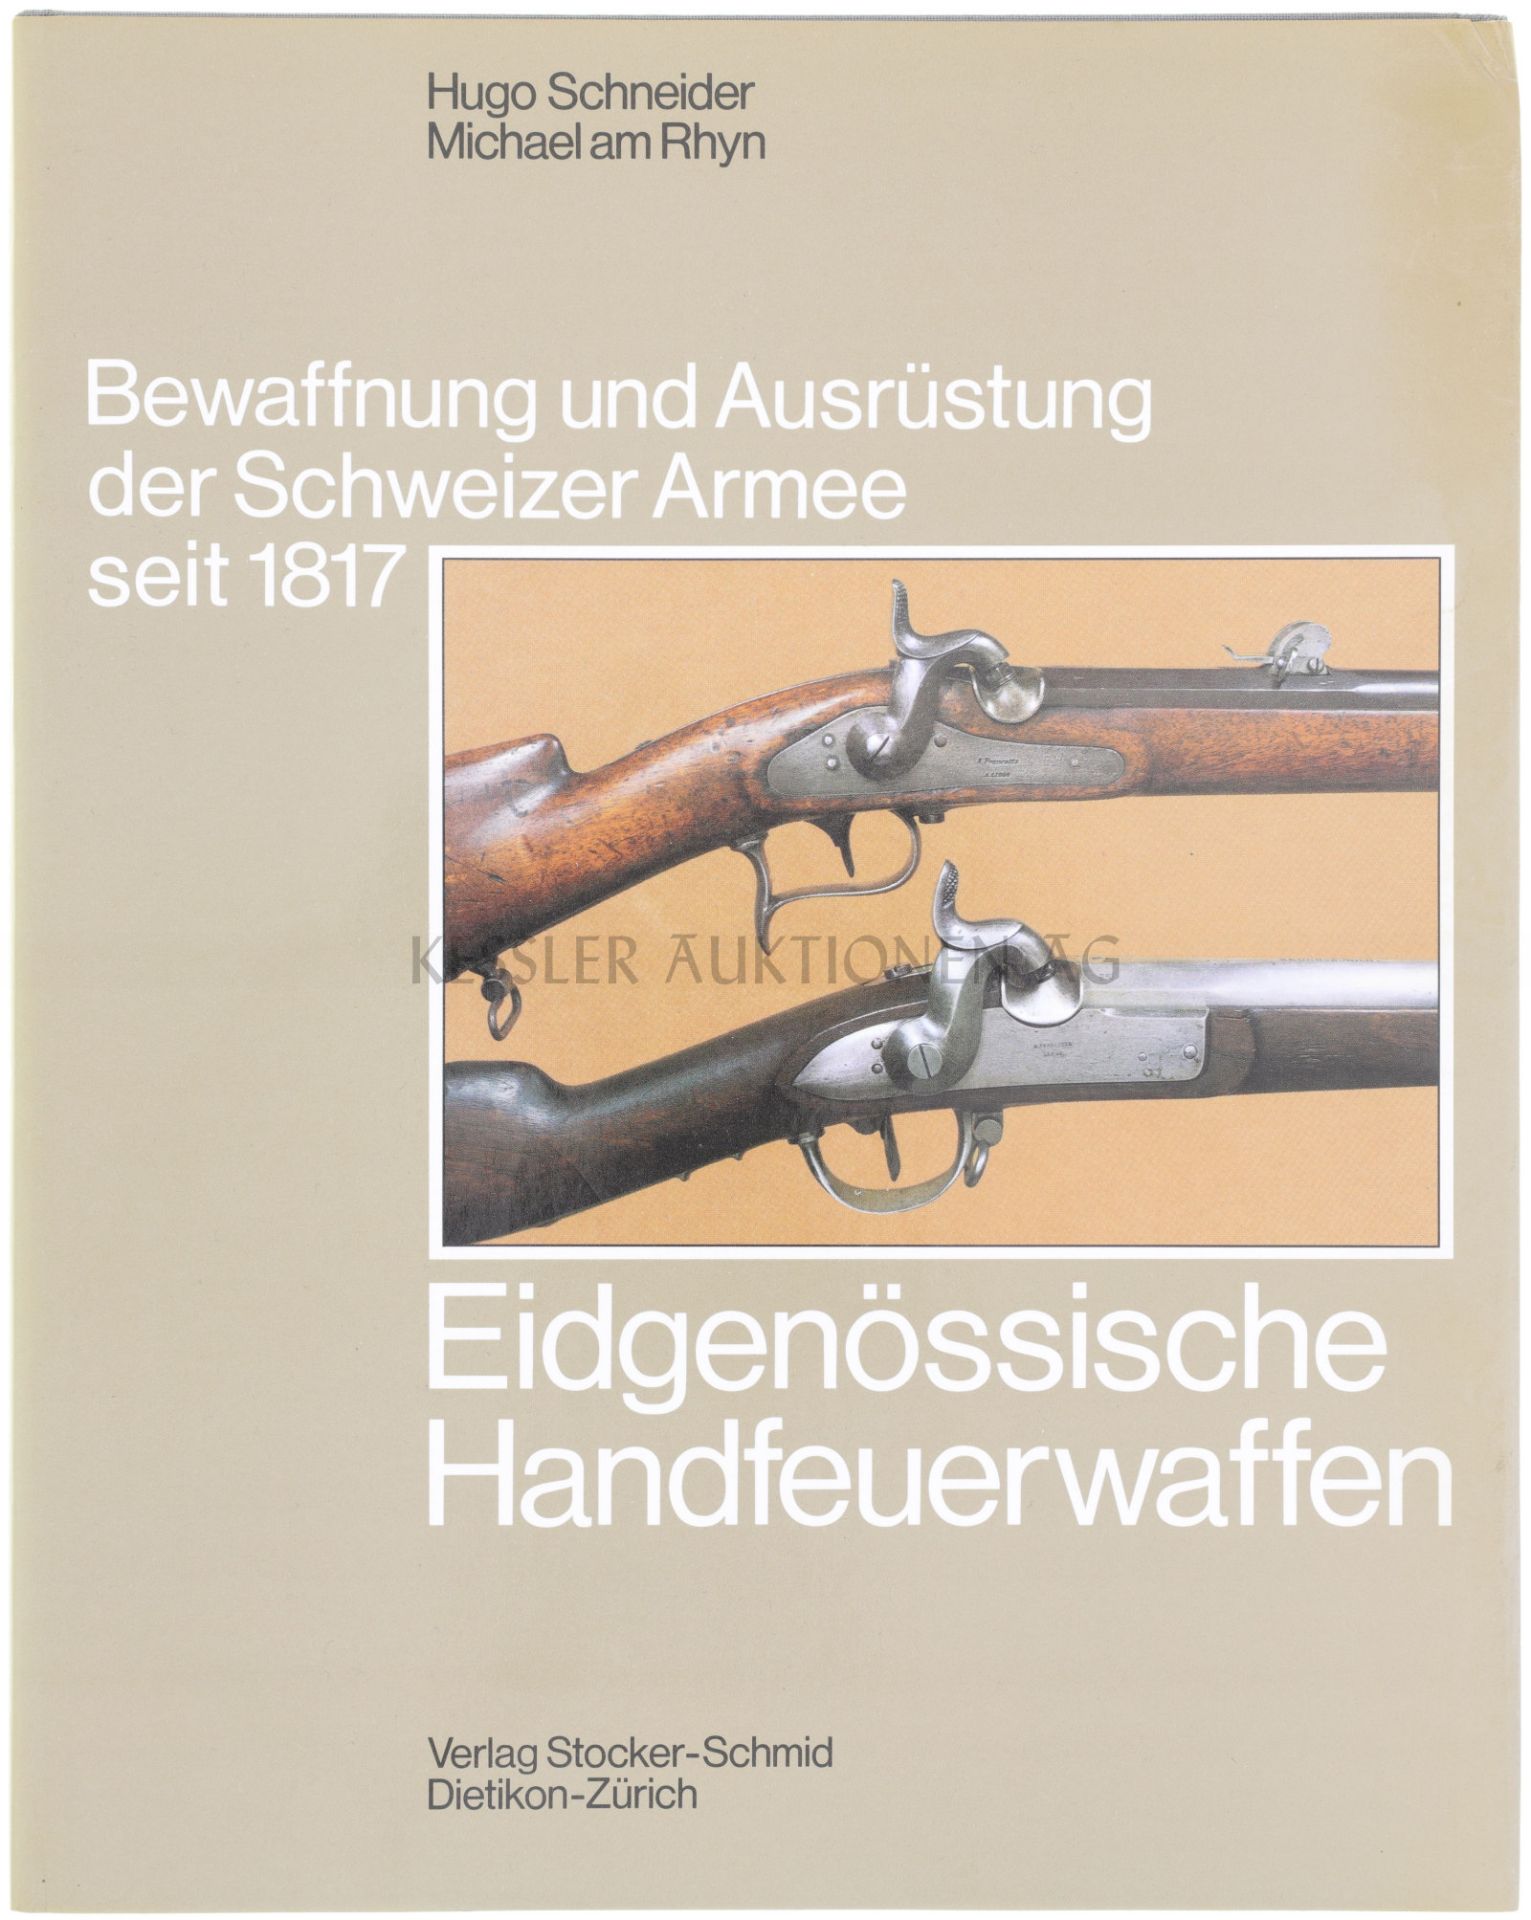 Eidgenössische Handfeuerwaffen, Band 2 aus der Reihe "Bewaffnung und Ausrüstung der Schweizer